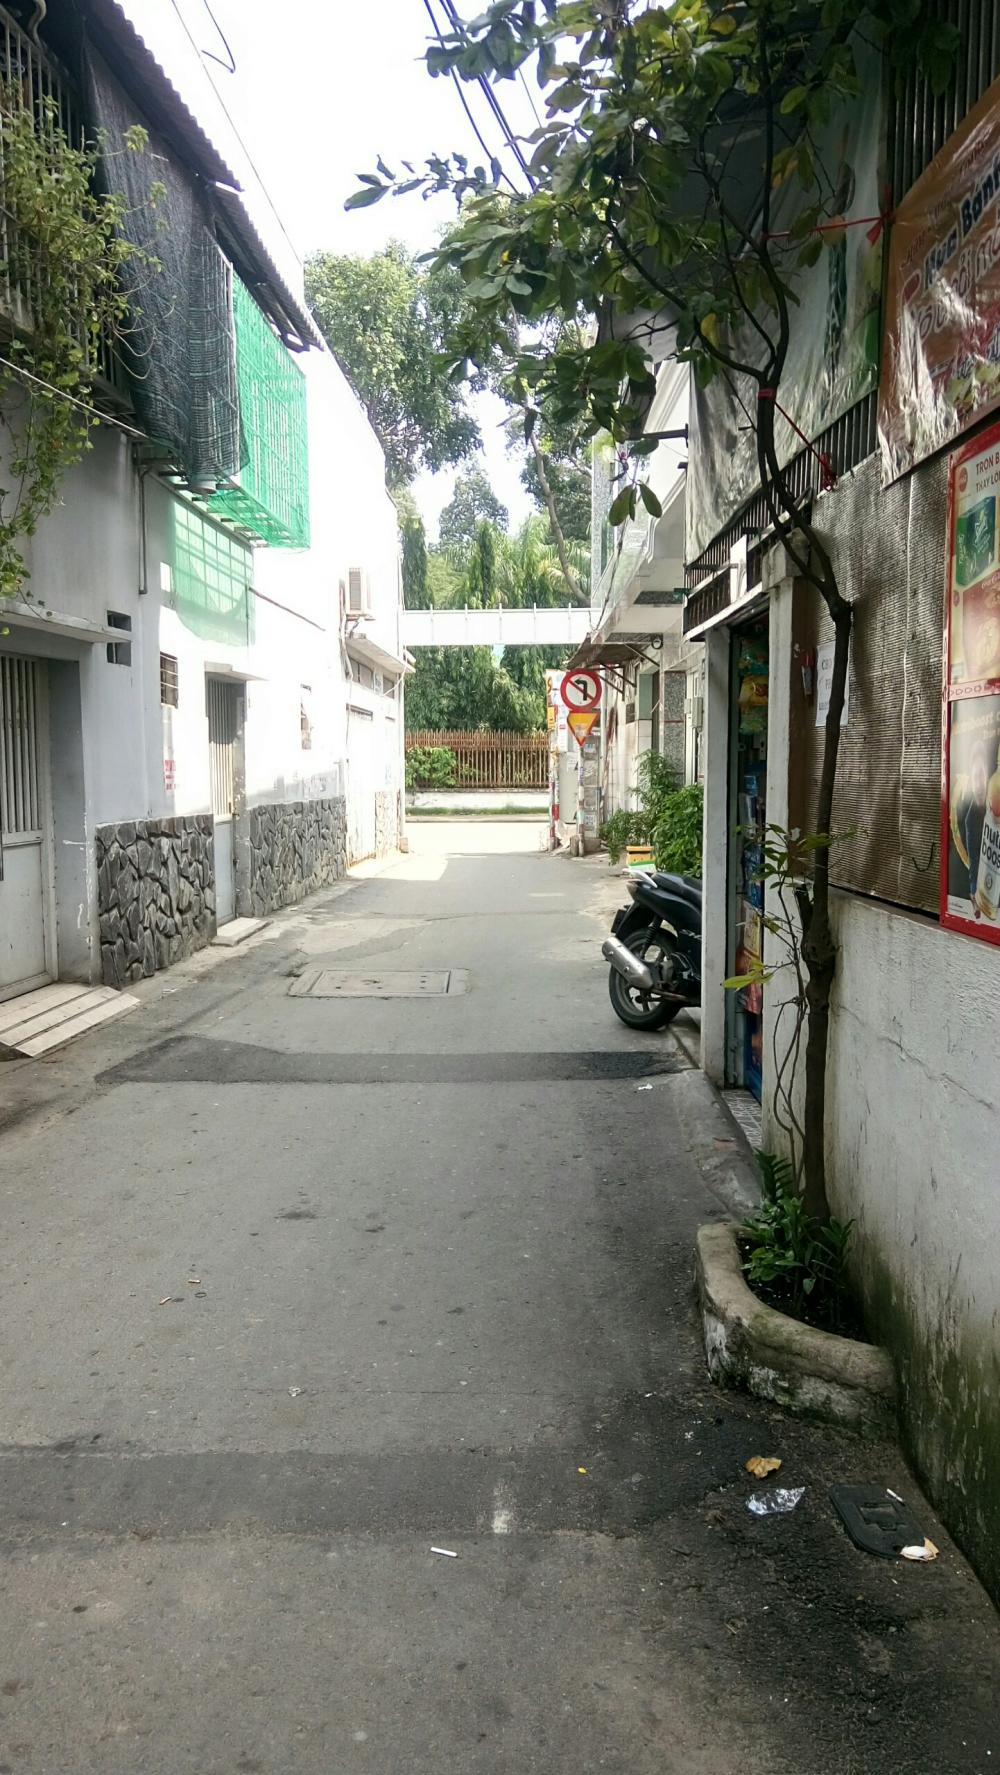 Bán nhà 1 trệt 1 lầu đường Nguyễn Kiệm, DT 66.8m2, dân cư đông đúc, LH Minh 0918984438